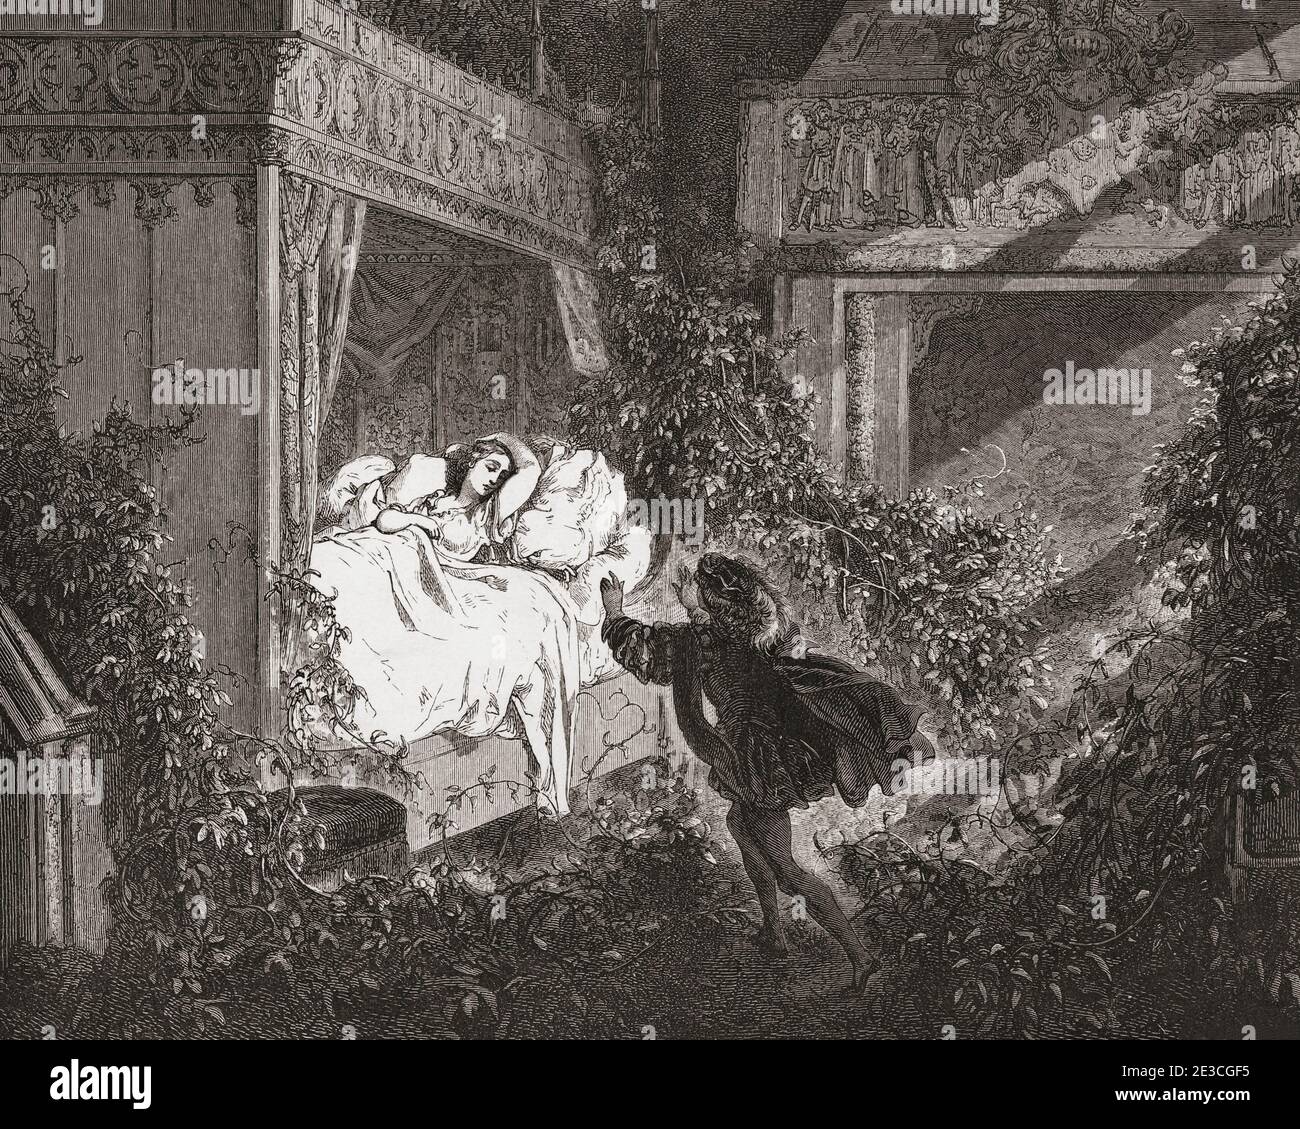 Dormire bellezza. Dopo un lavoro del 19 ° secolo da Gustave Dore. Il bel principe trova Sleeping Beauty e la risveglierà con un bacio. Foto Stock